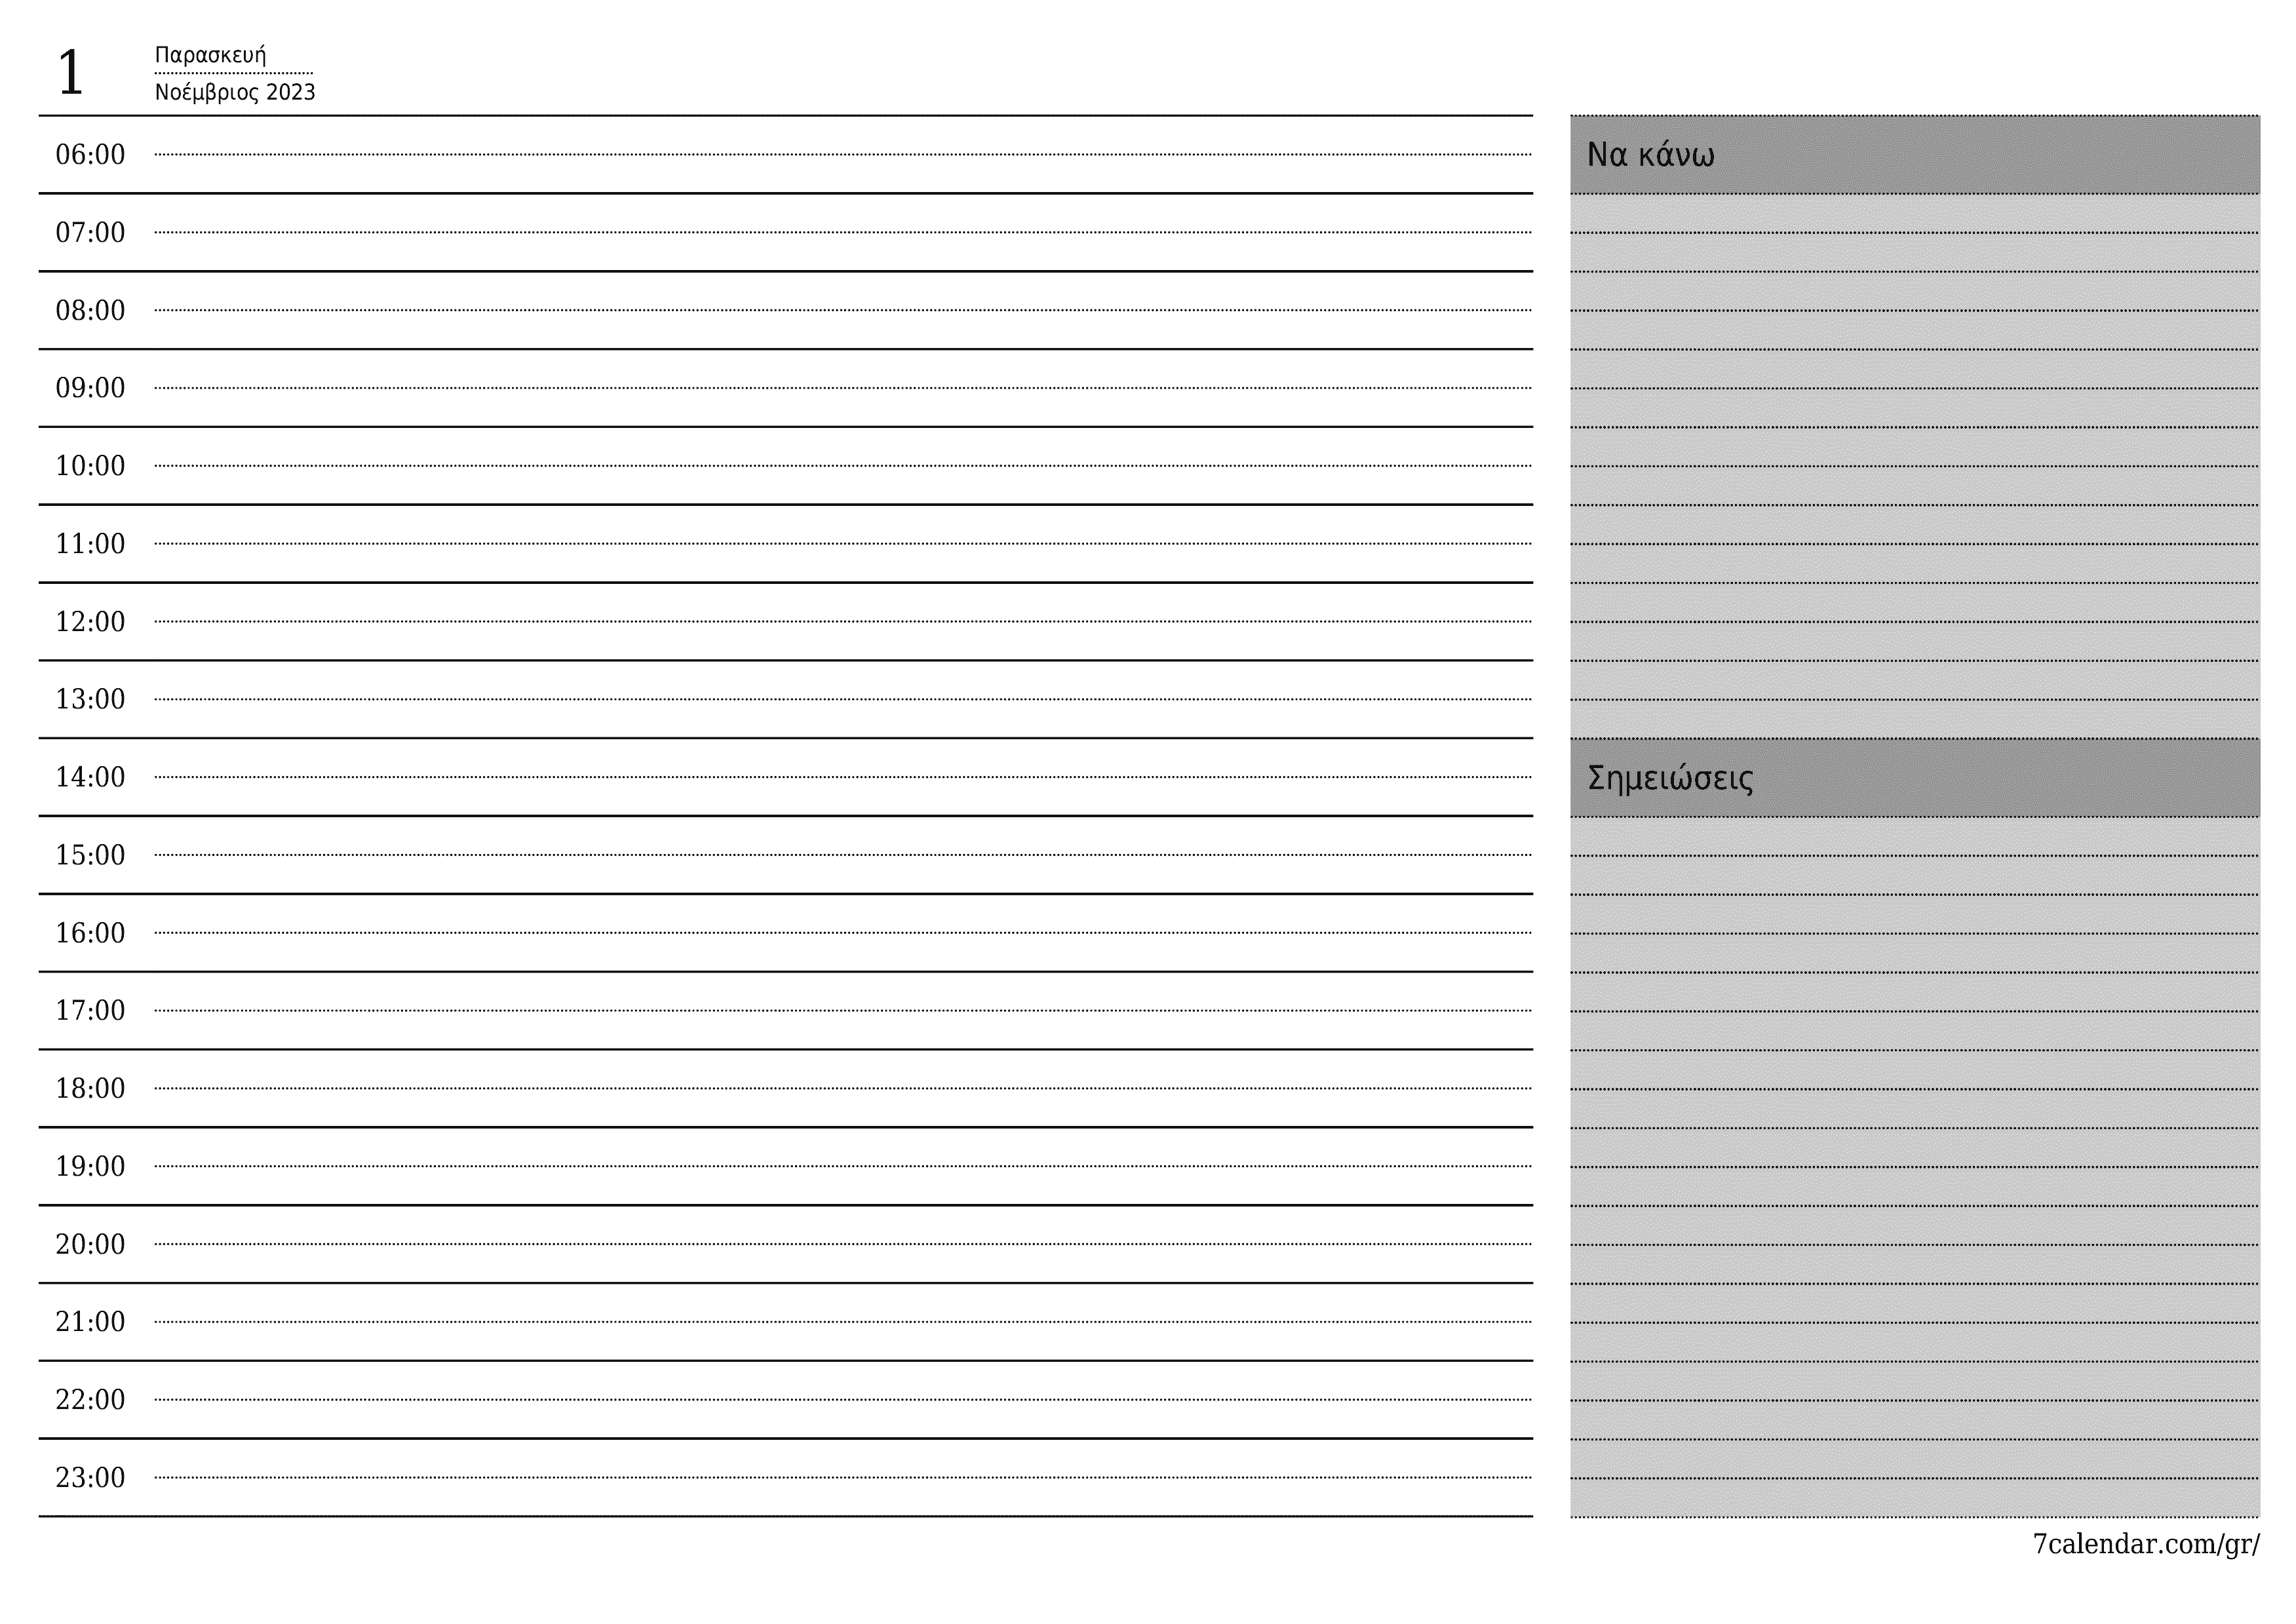 Κενό καθημερινό σχεδιασμό για την ημέρα Νοέμβριος 2023 με σημειώσεις, αποθήκευση και εκτύπωση σε PDF PNG Greek